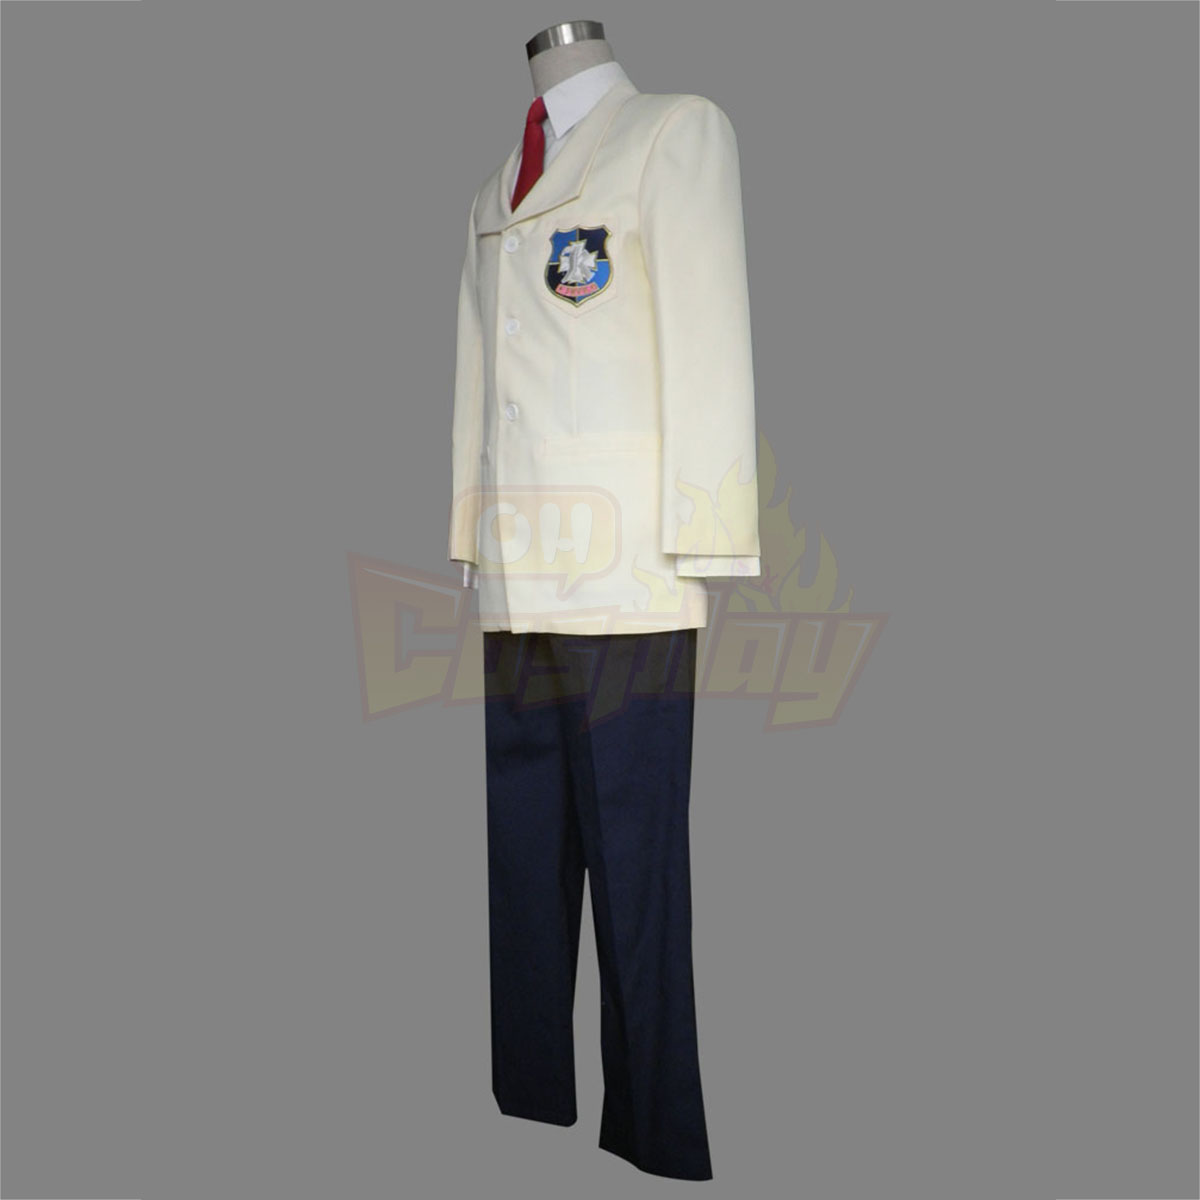 Luxusný Clannad Tomoya Okazaki Stredná škola Male Zimný Uniform Kostýmy